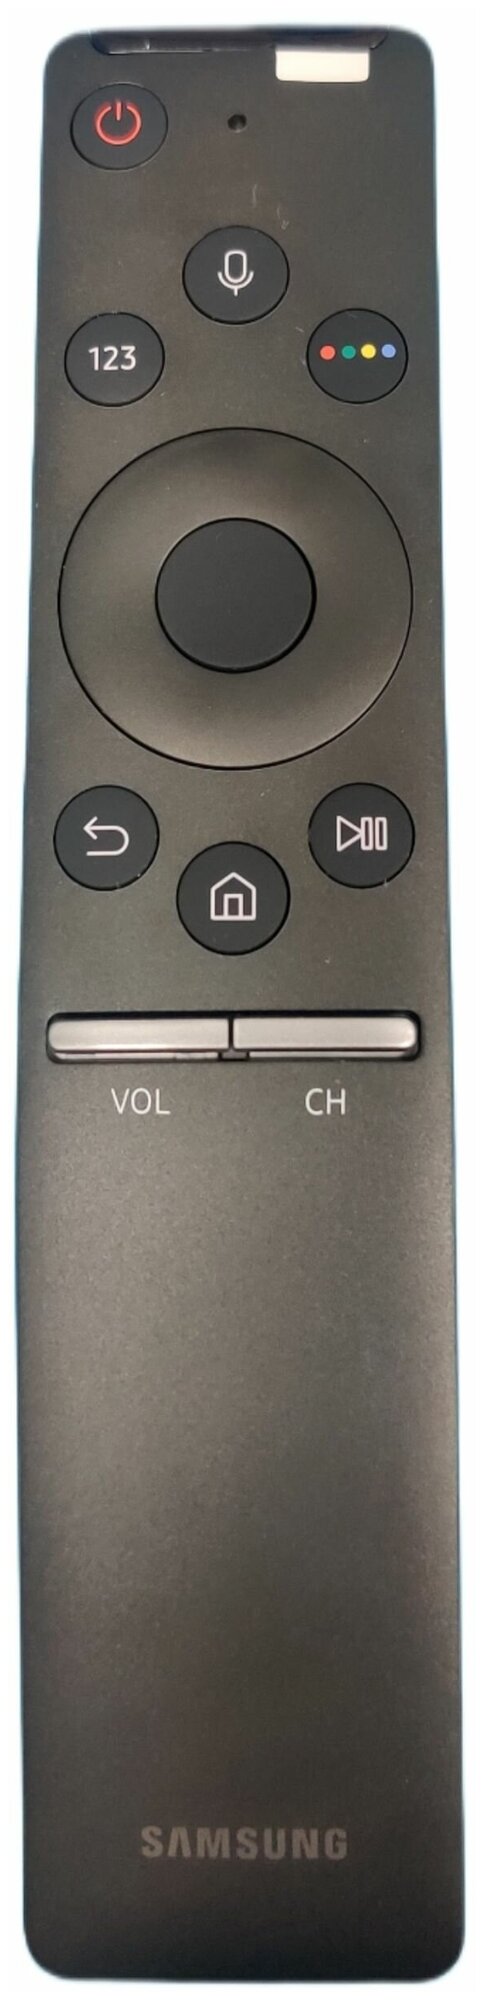 Пульт Samsung BN59-01274A/01298D Smart Control с голосовым управлением